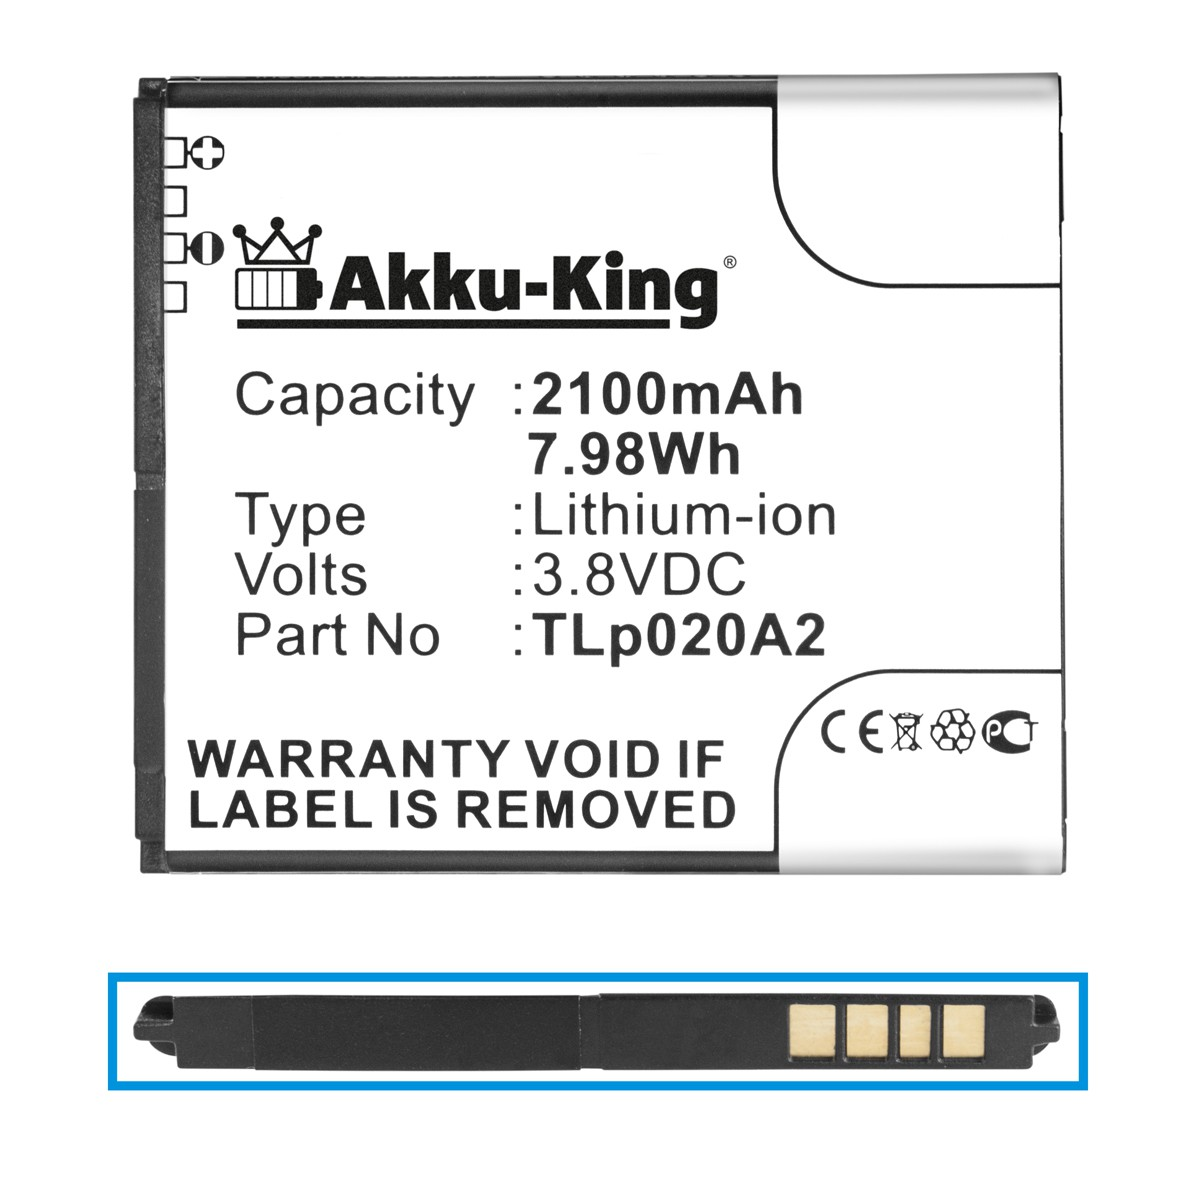 Akku Tli020A1 Handy-Akku, 2100mAh 3.8 Alcatel für Volt, AKKU-KING Li-Ion